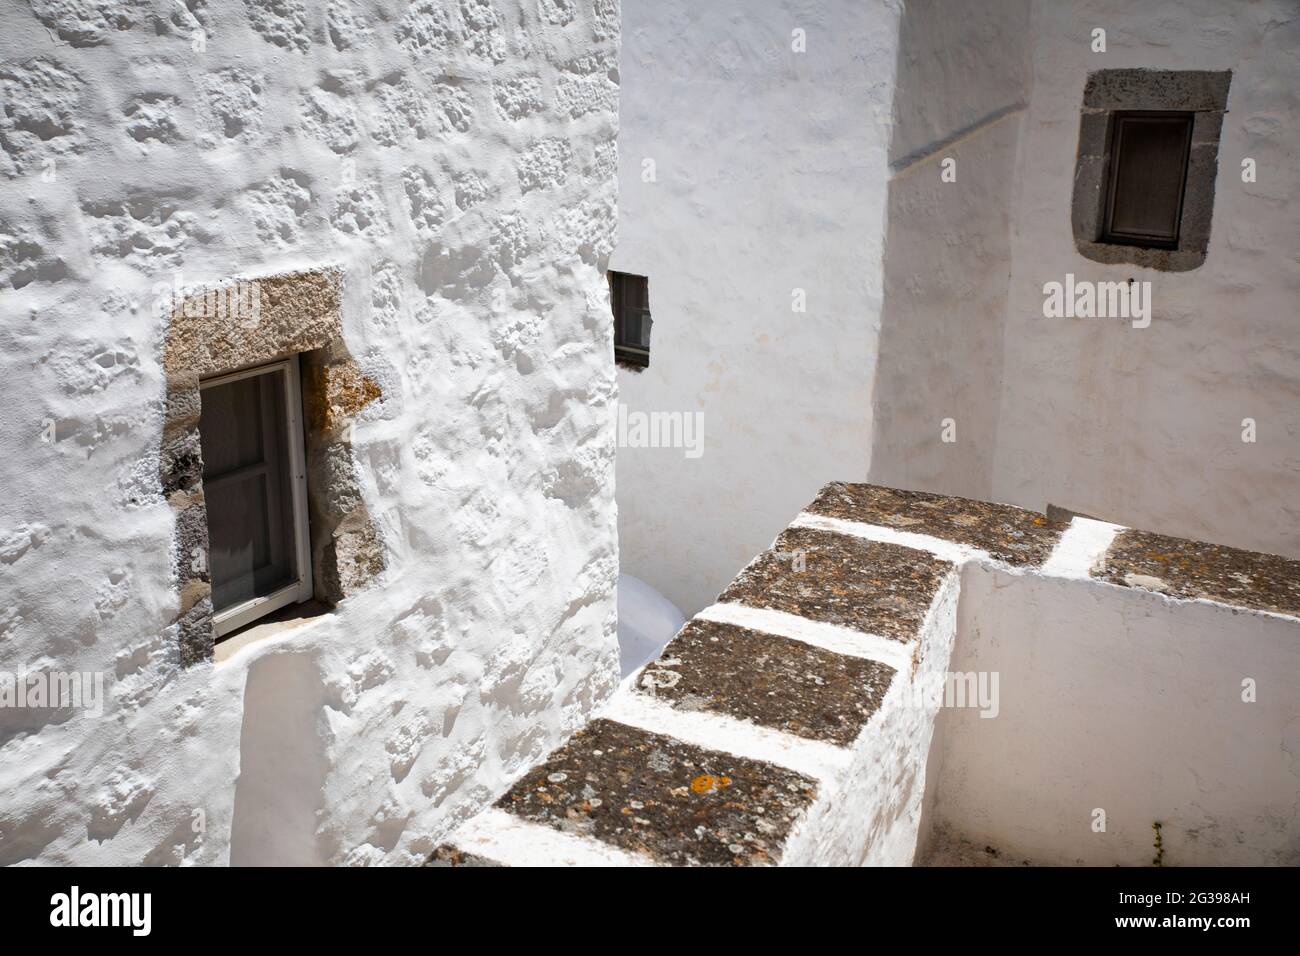 Bâtiments blancs sur l'île grecque de Patmos Banque D'Images